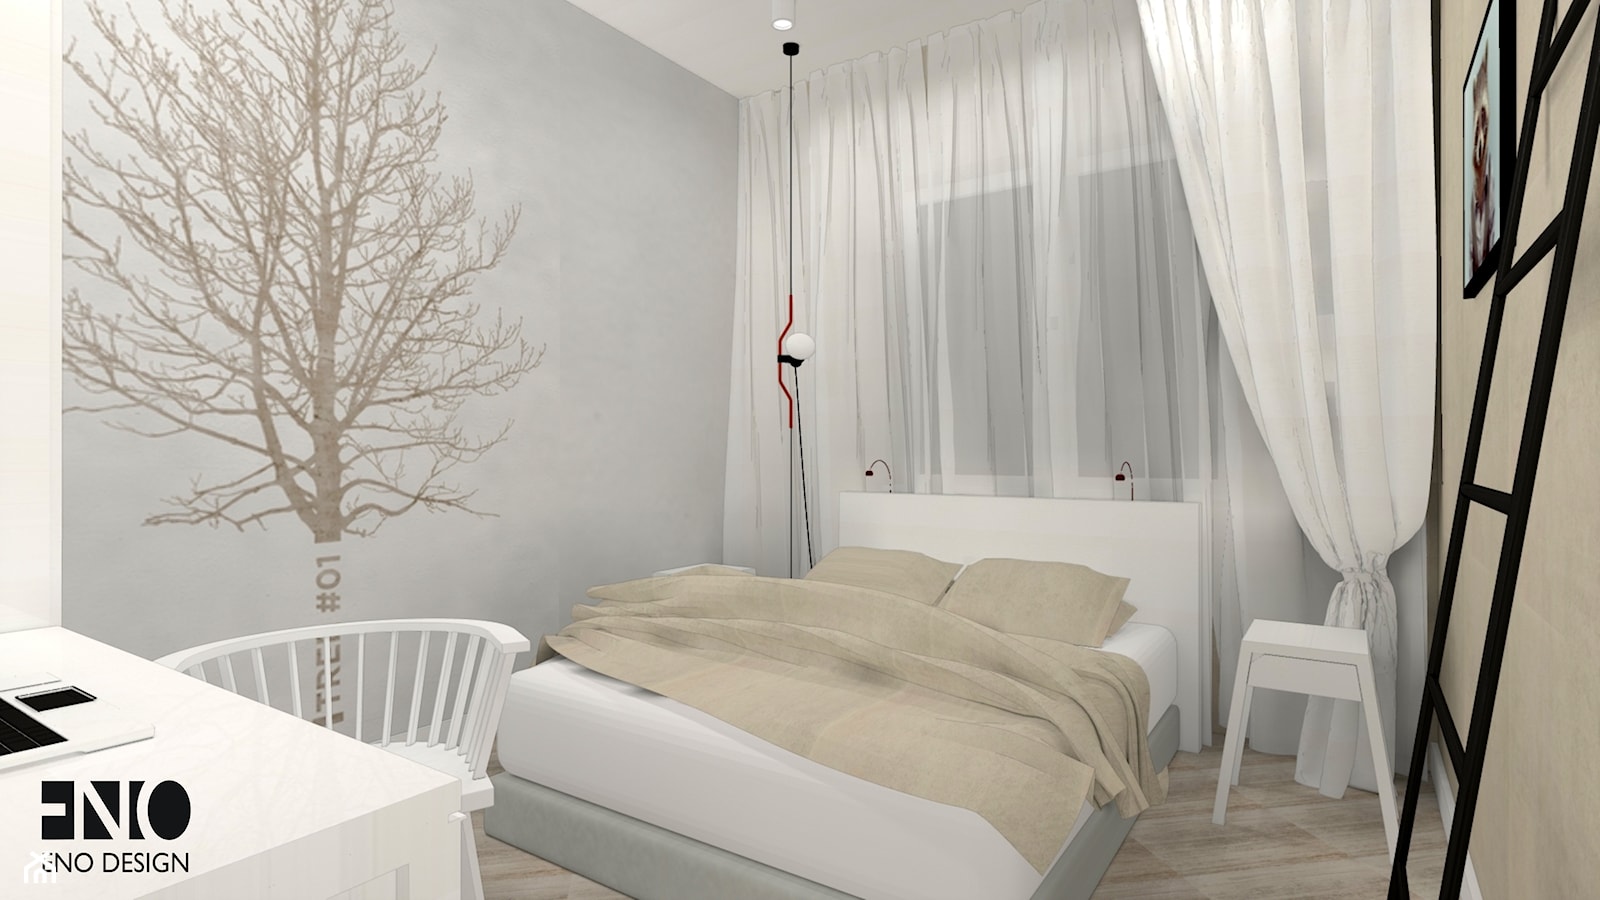 Mieszkanie 70m2 - Sypialnia, styl rustykalny - zdjęcie od Eno Design - Homebook